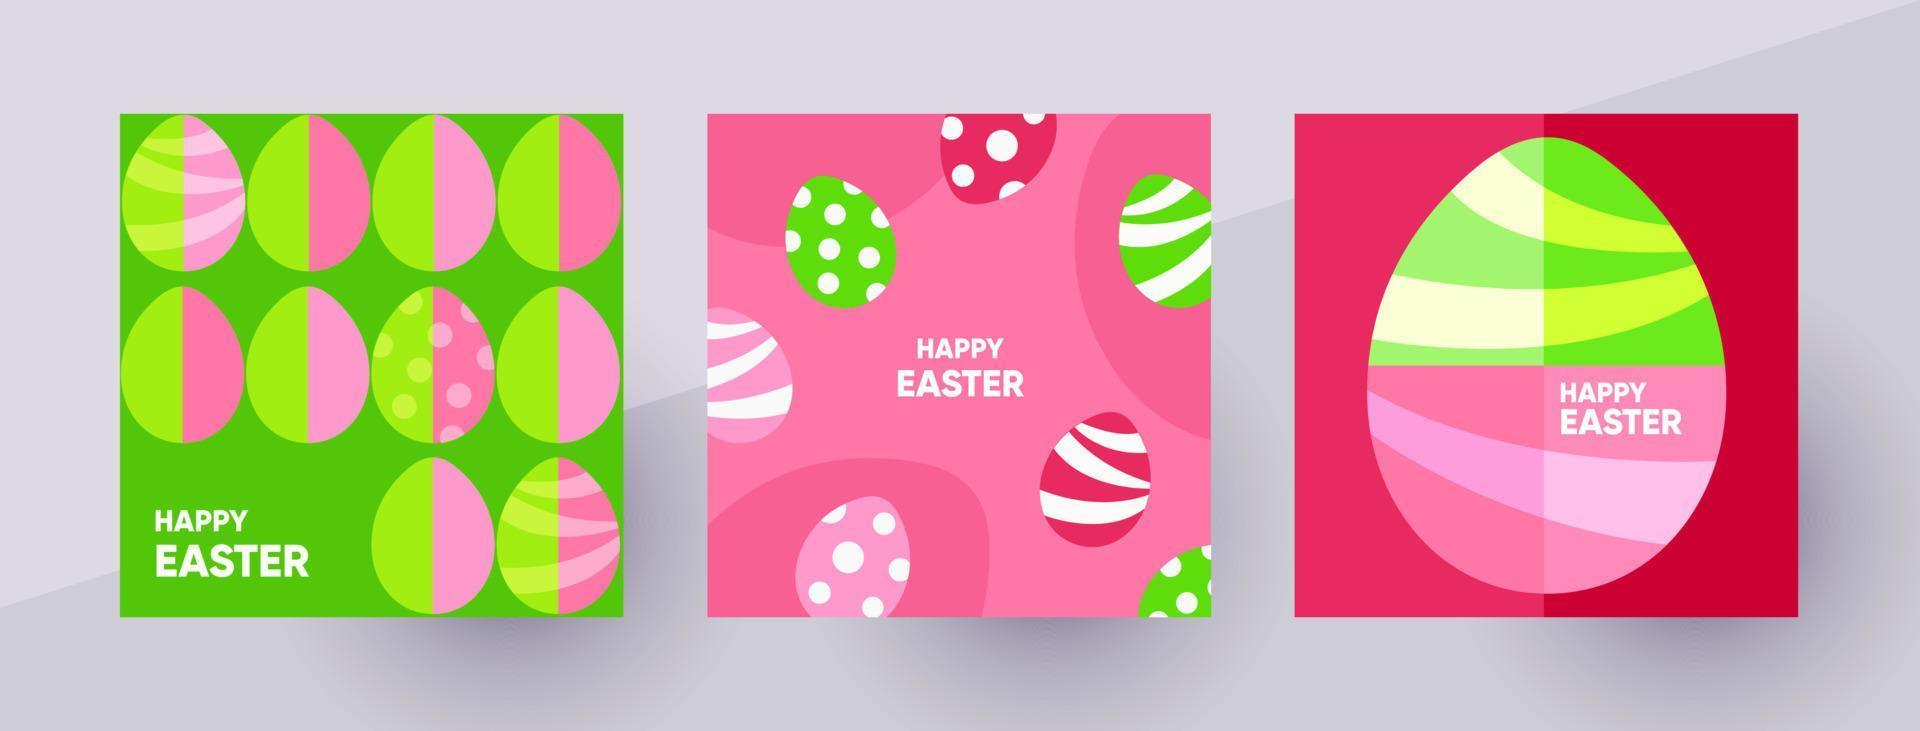 ilustrações de feliz páscoa em estilo minimalista. ovos de páscoa em cores vivas. modelo para post de mídia social, pôster, cartão, panfleto. ilustração vetorial. vetor